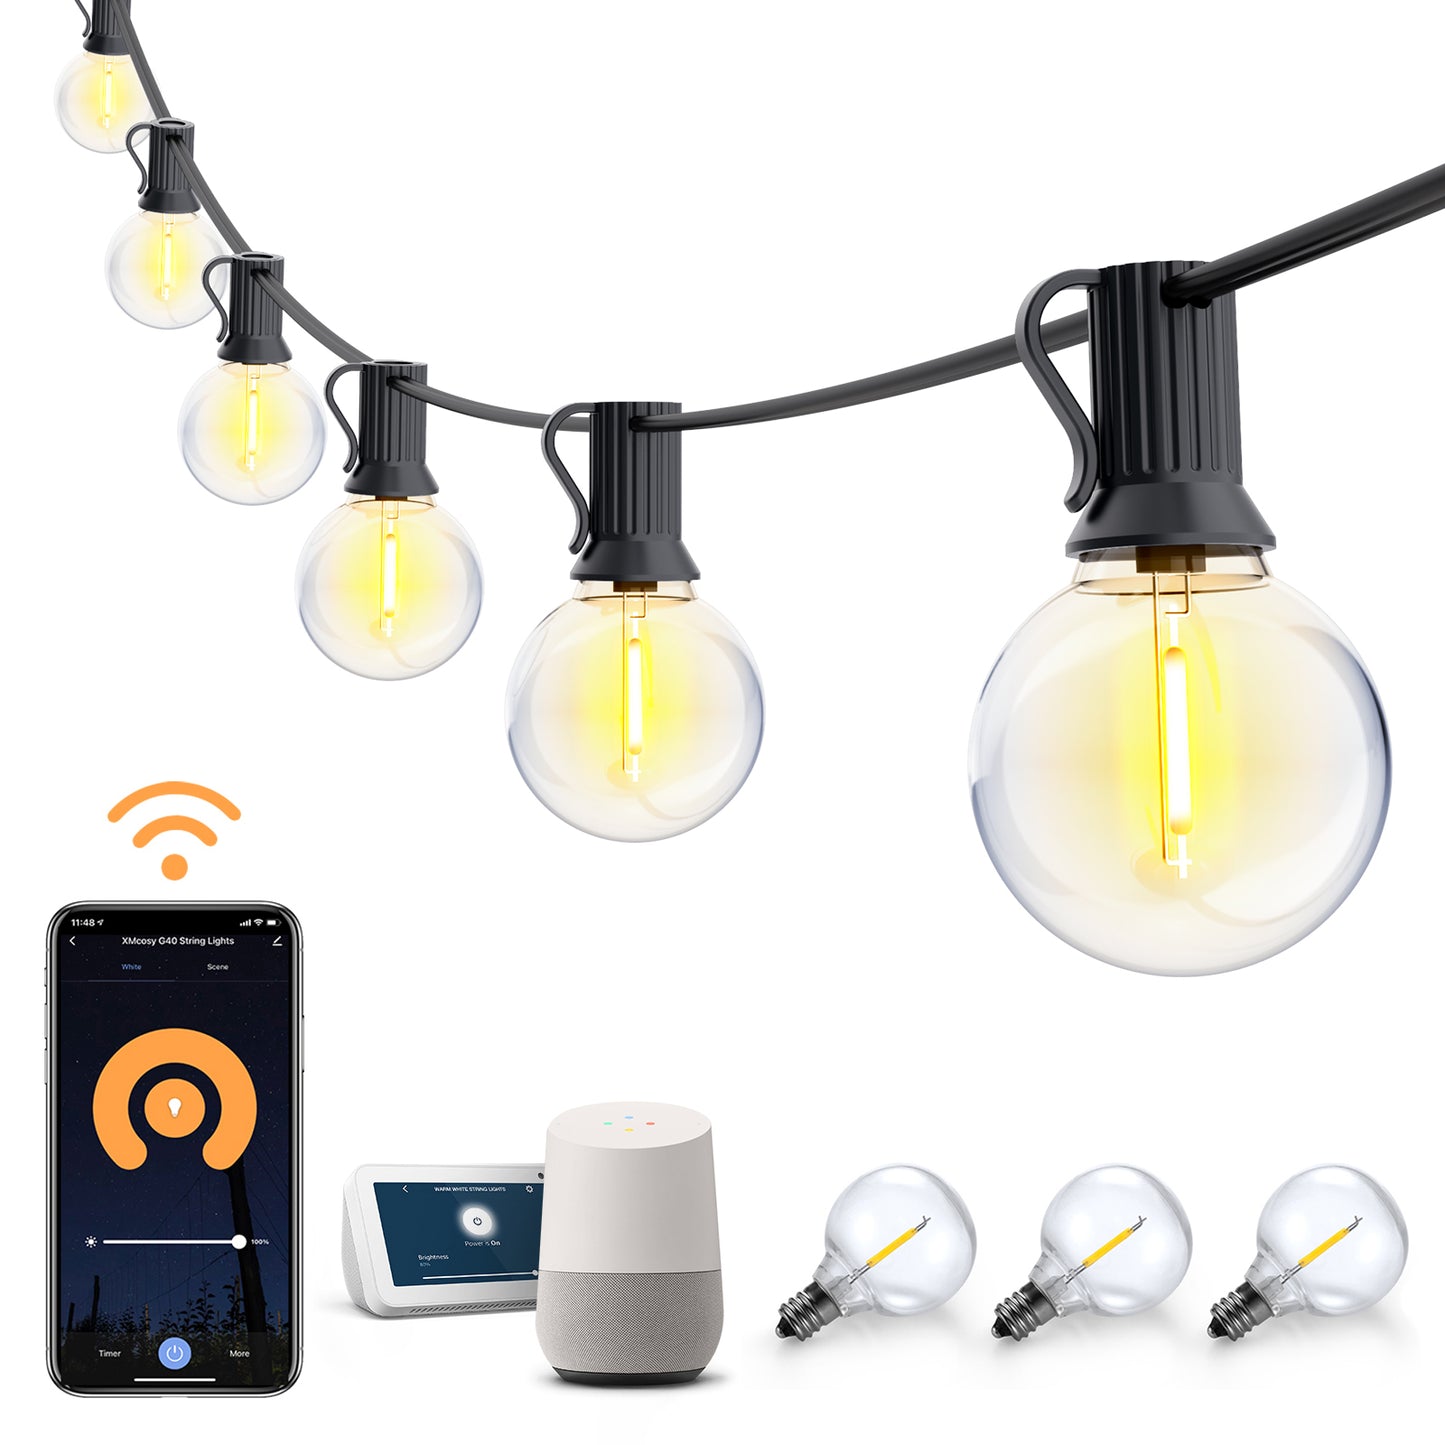 Portable Outdoor Solar Power LED Light Bulb – Warmly